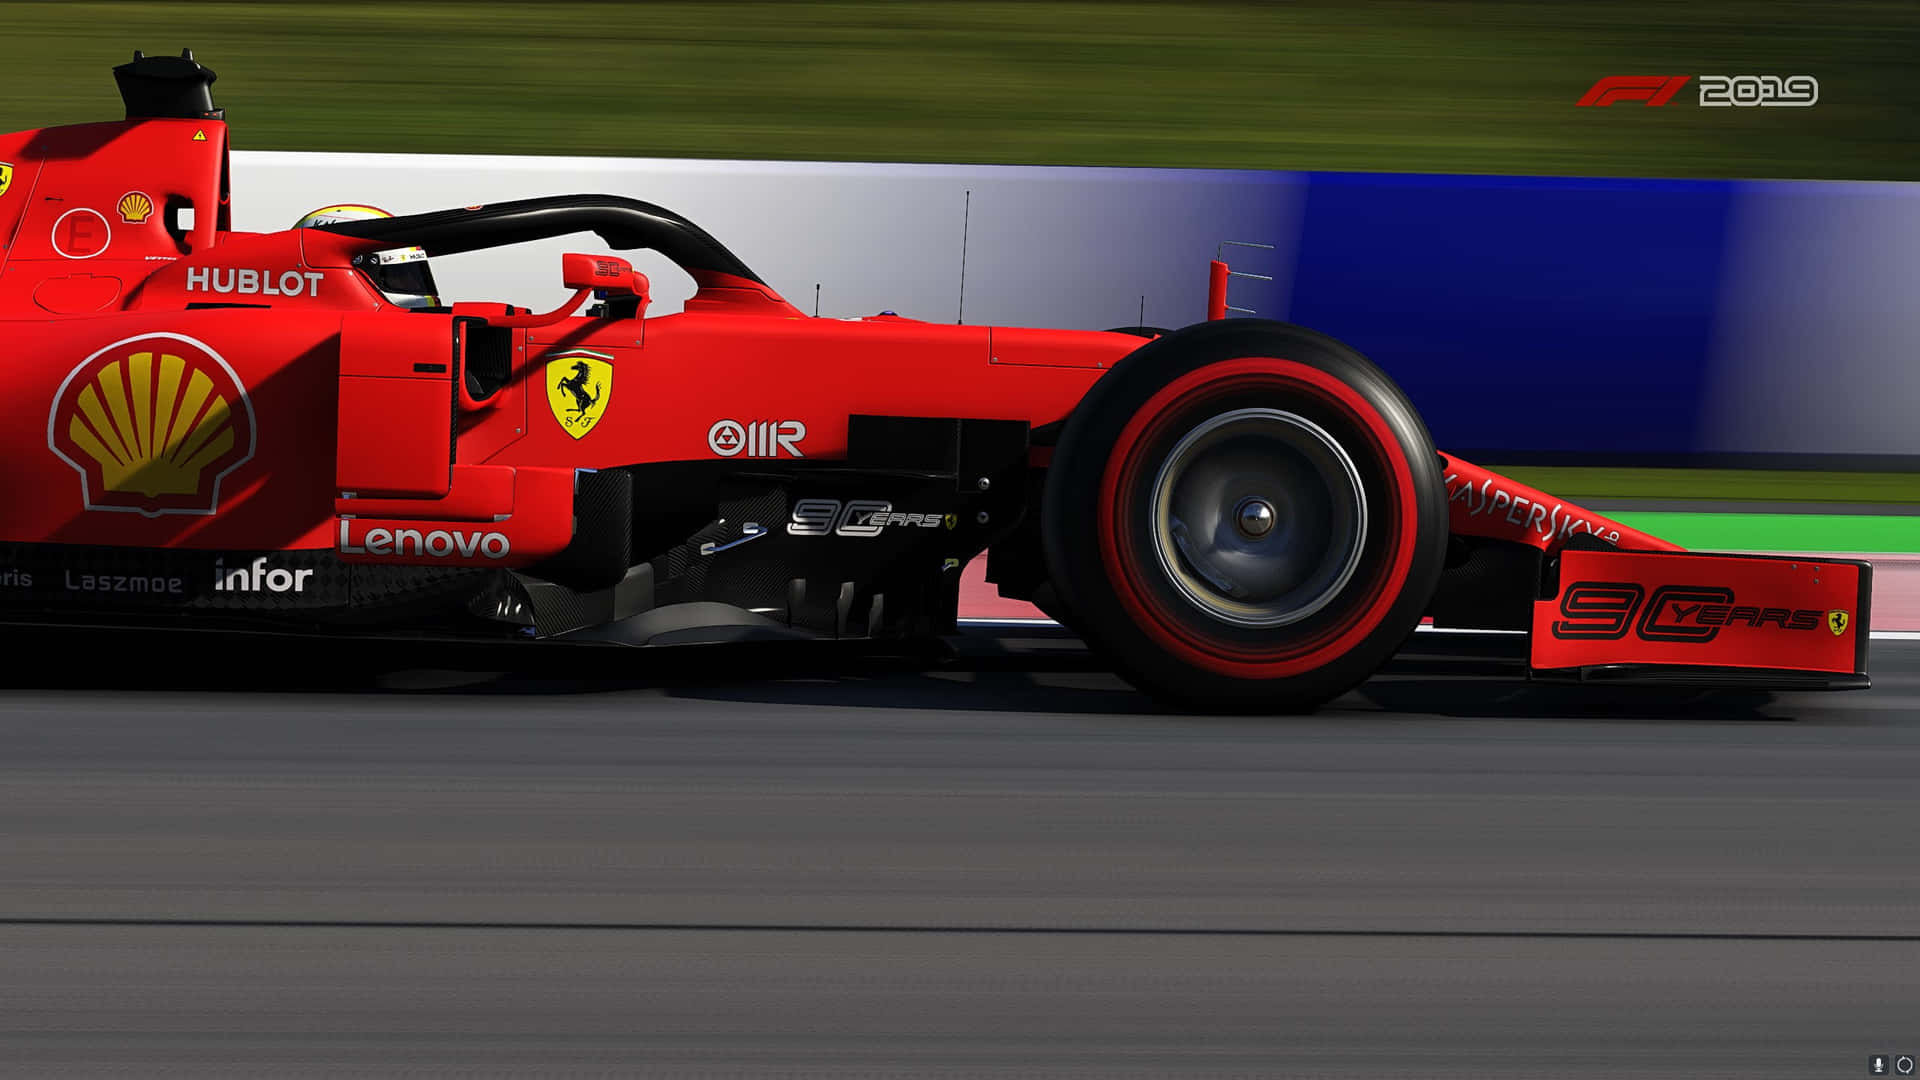 “Scuderia Ferrari F1 Championship Potential” Wallpaper